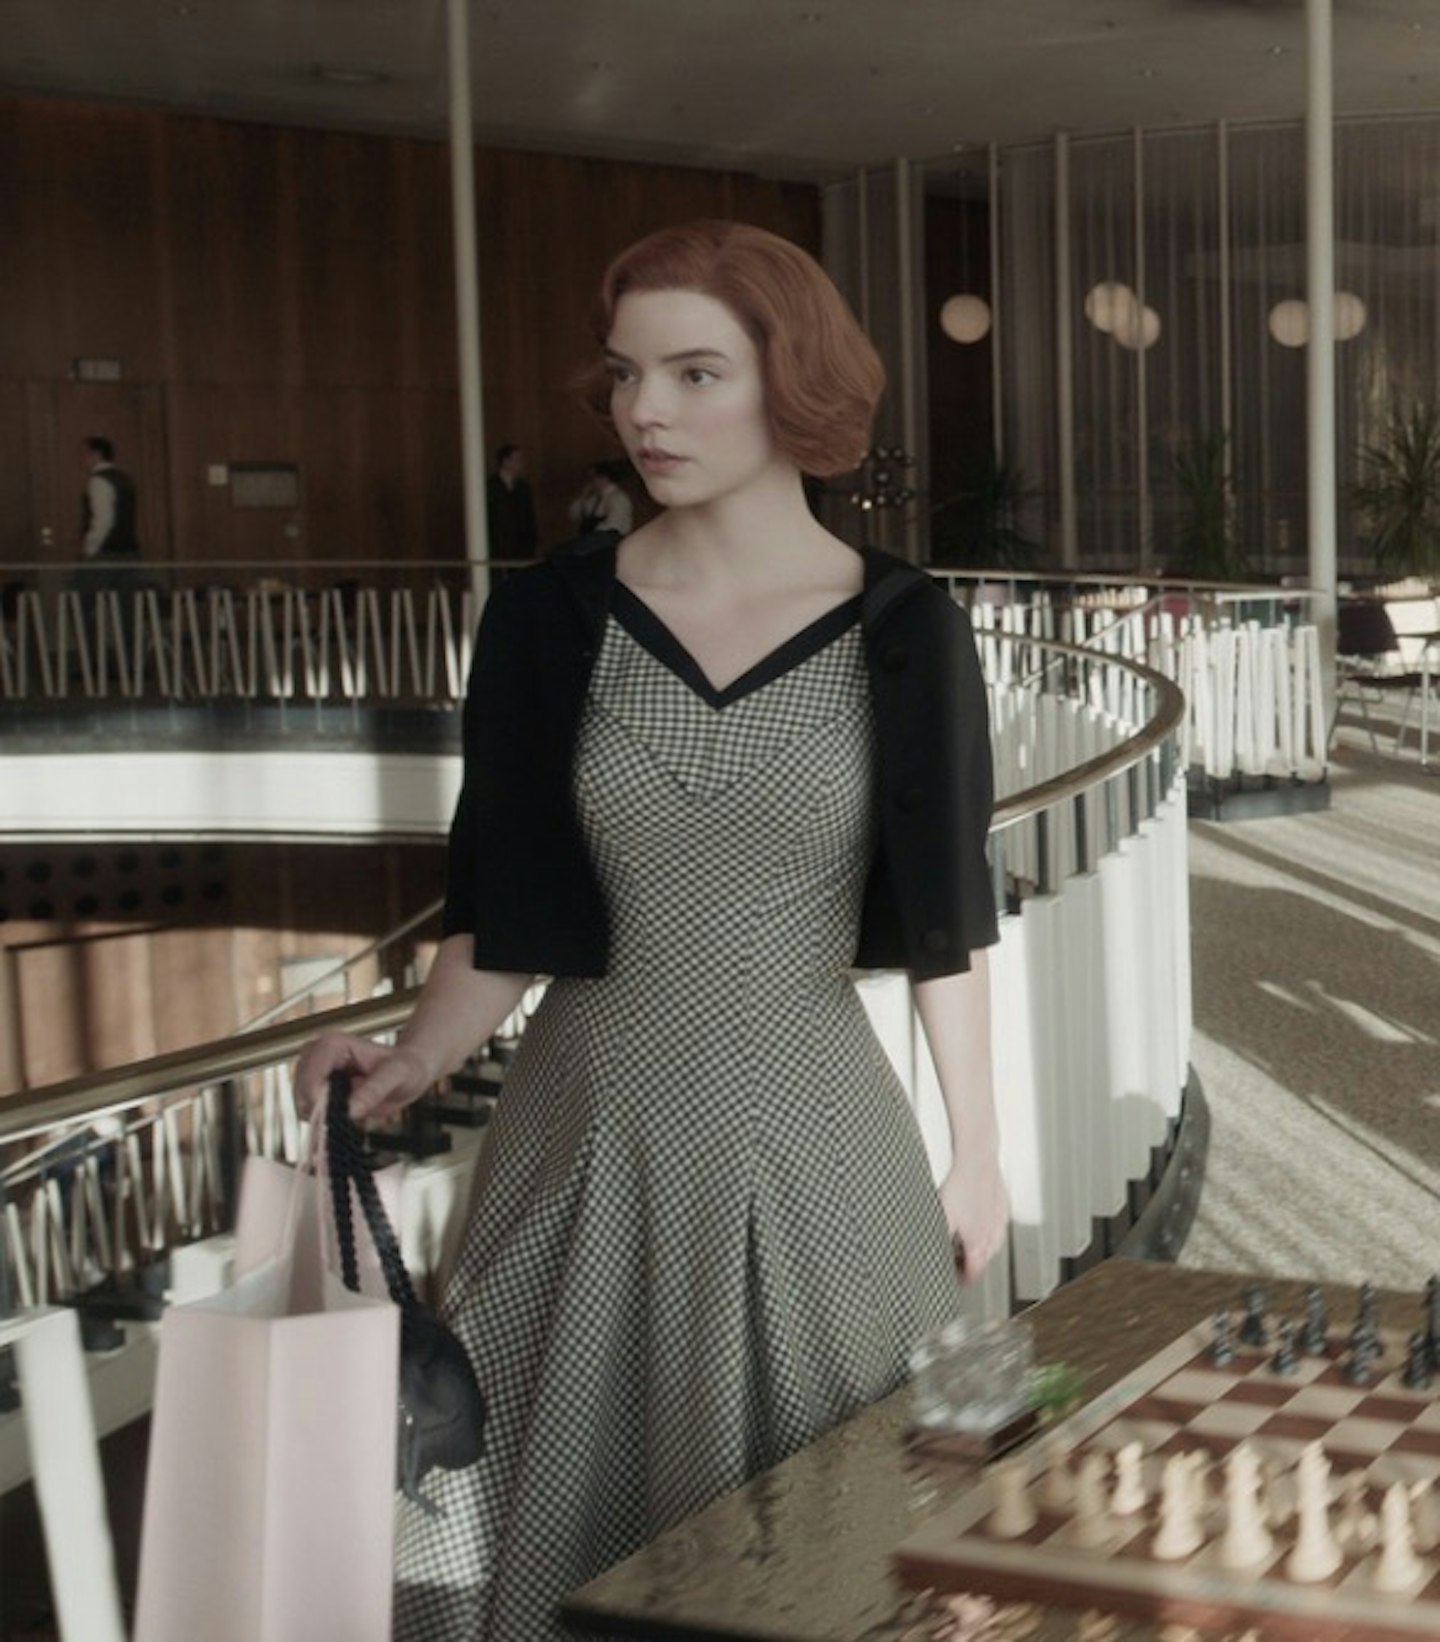 We love Beth Harmon's style in The Queen's Gambit